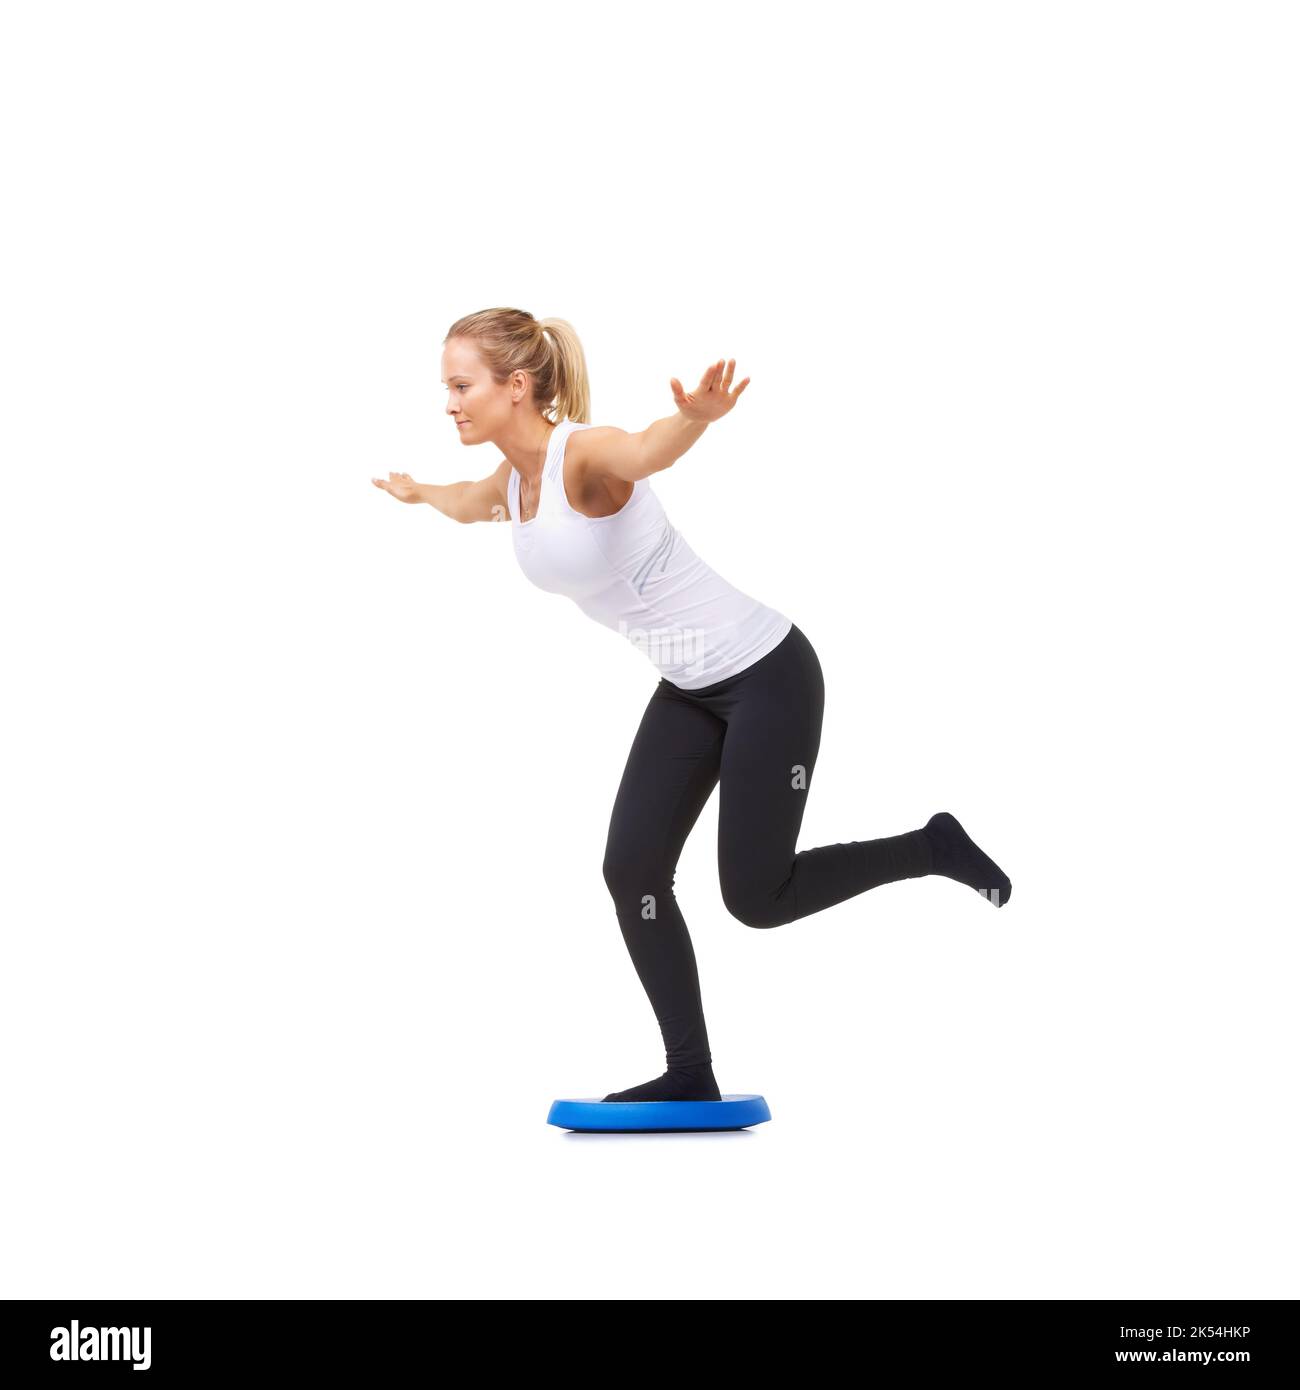 Fokus auf Gleichgewicht. Studioaufnahme einer jungen Frau, die isoliert auf Weiß balancierende Übungen macht. Stockfoto